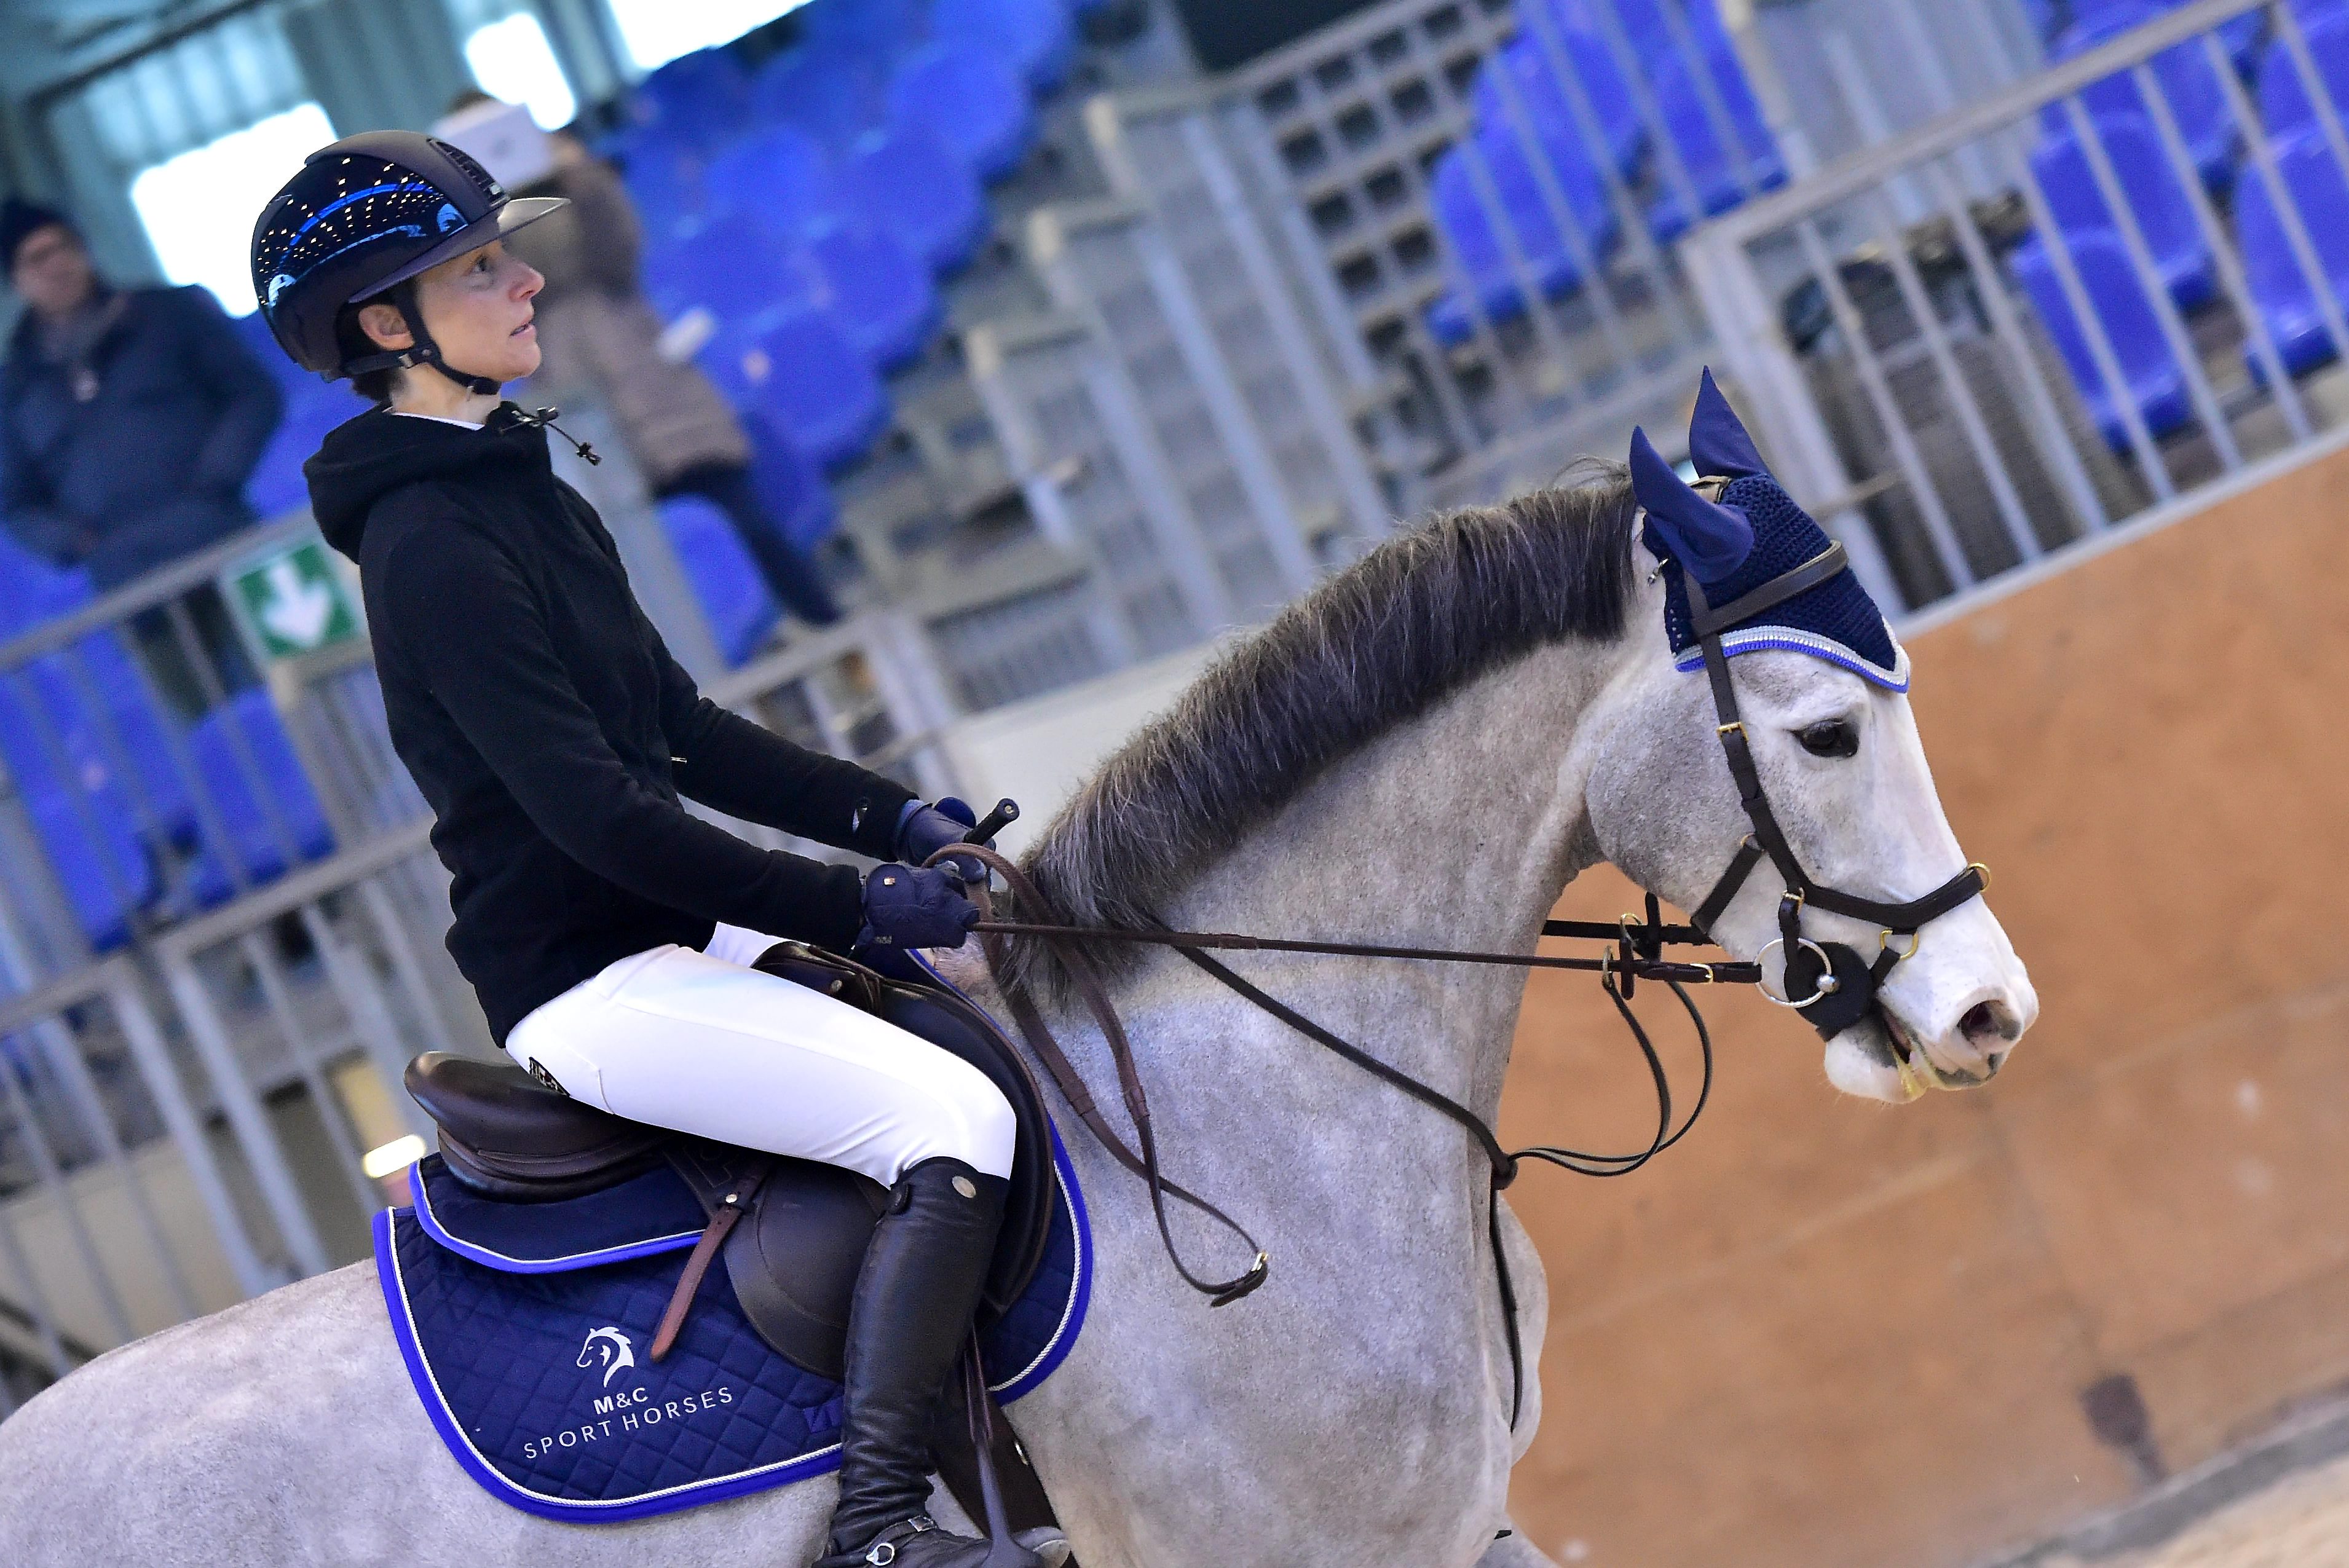 M&C Sport Horses: Marco e Caterina, una passione in comune